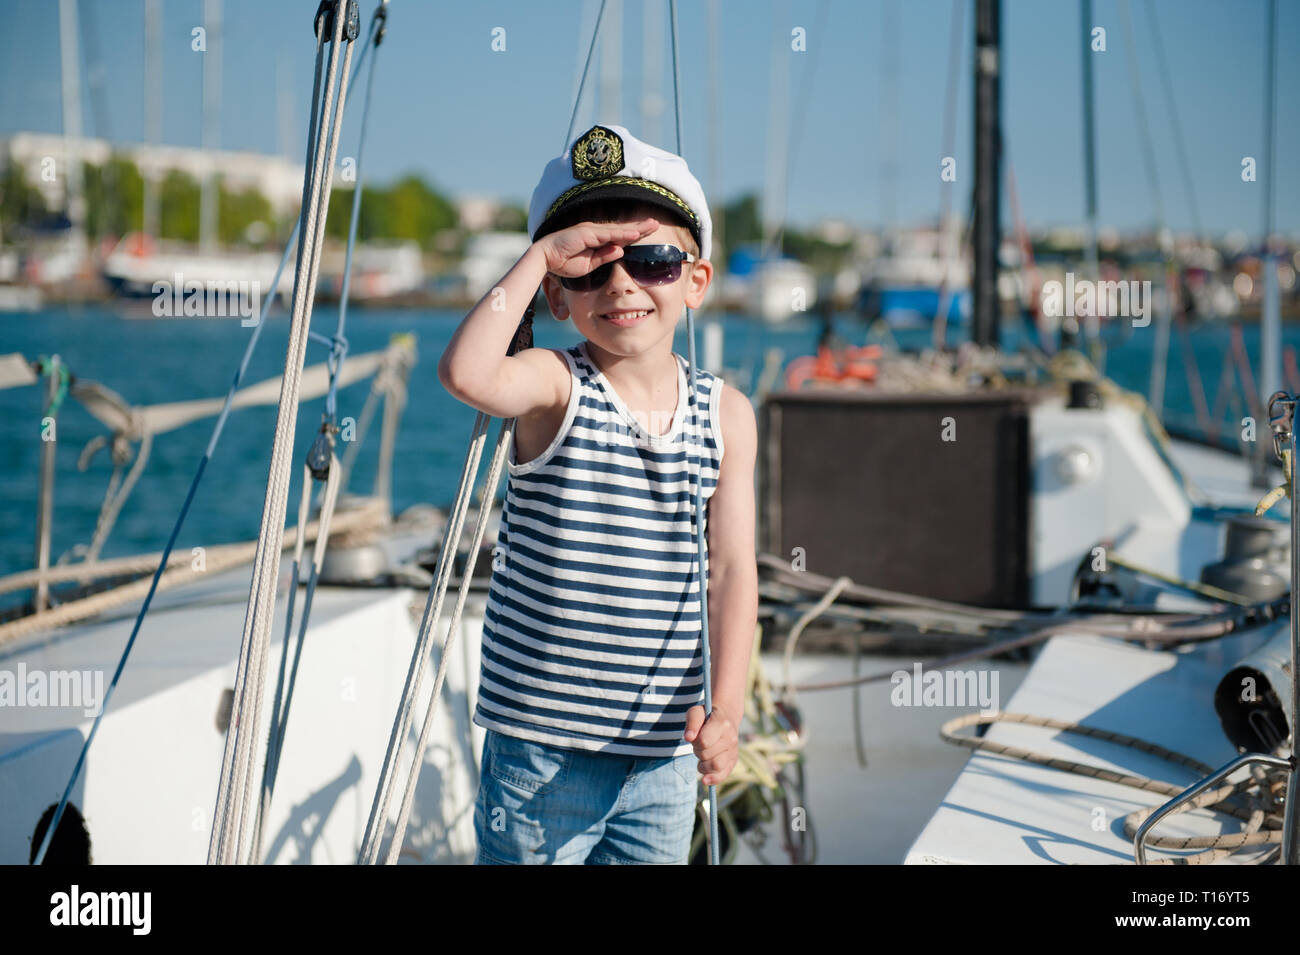 cute-happy-kid-in-captain-cap-on-yacht-board-in-summer-sea-port-T16YT5.jpg